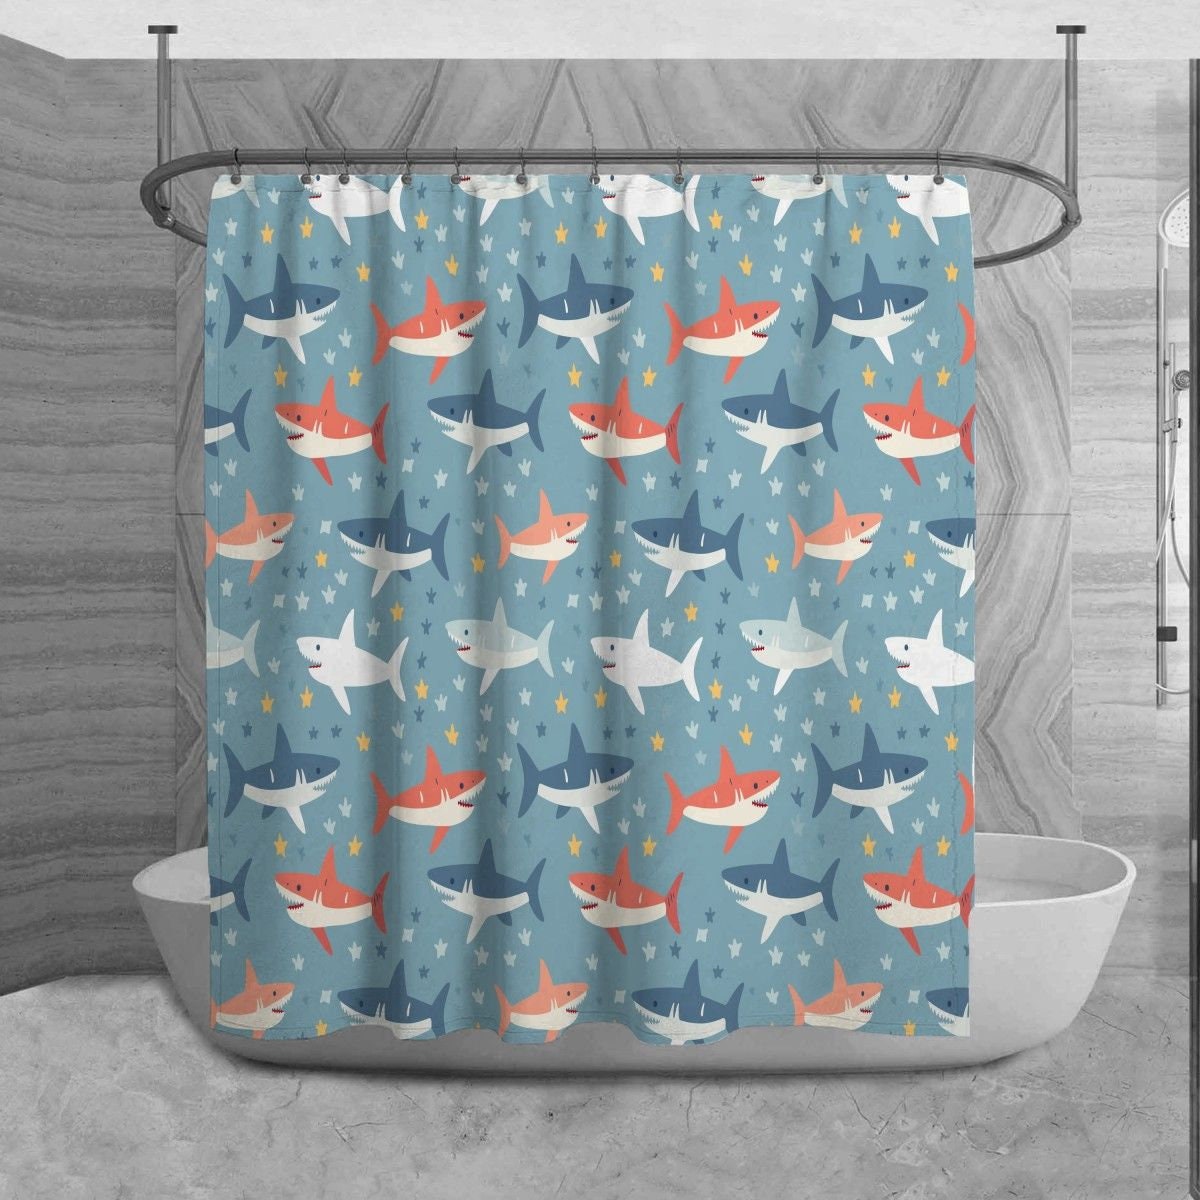 Aquatic Life Shower Curtain, Shark Bathroom Decor, Playful Bath